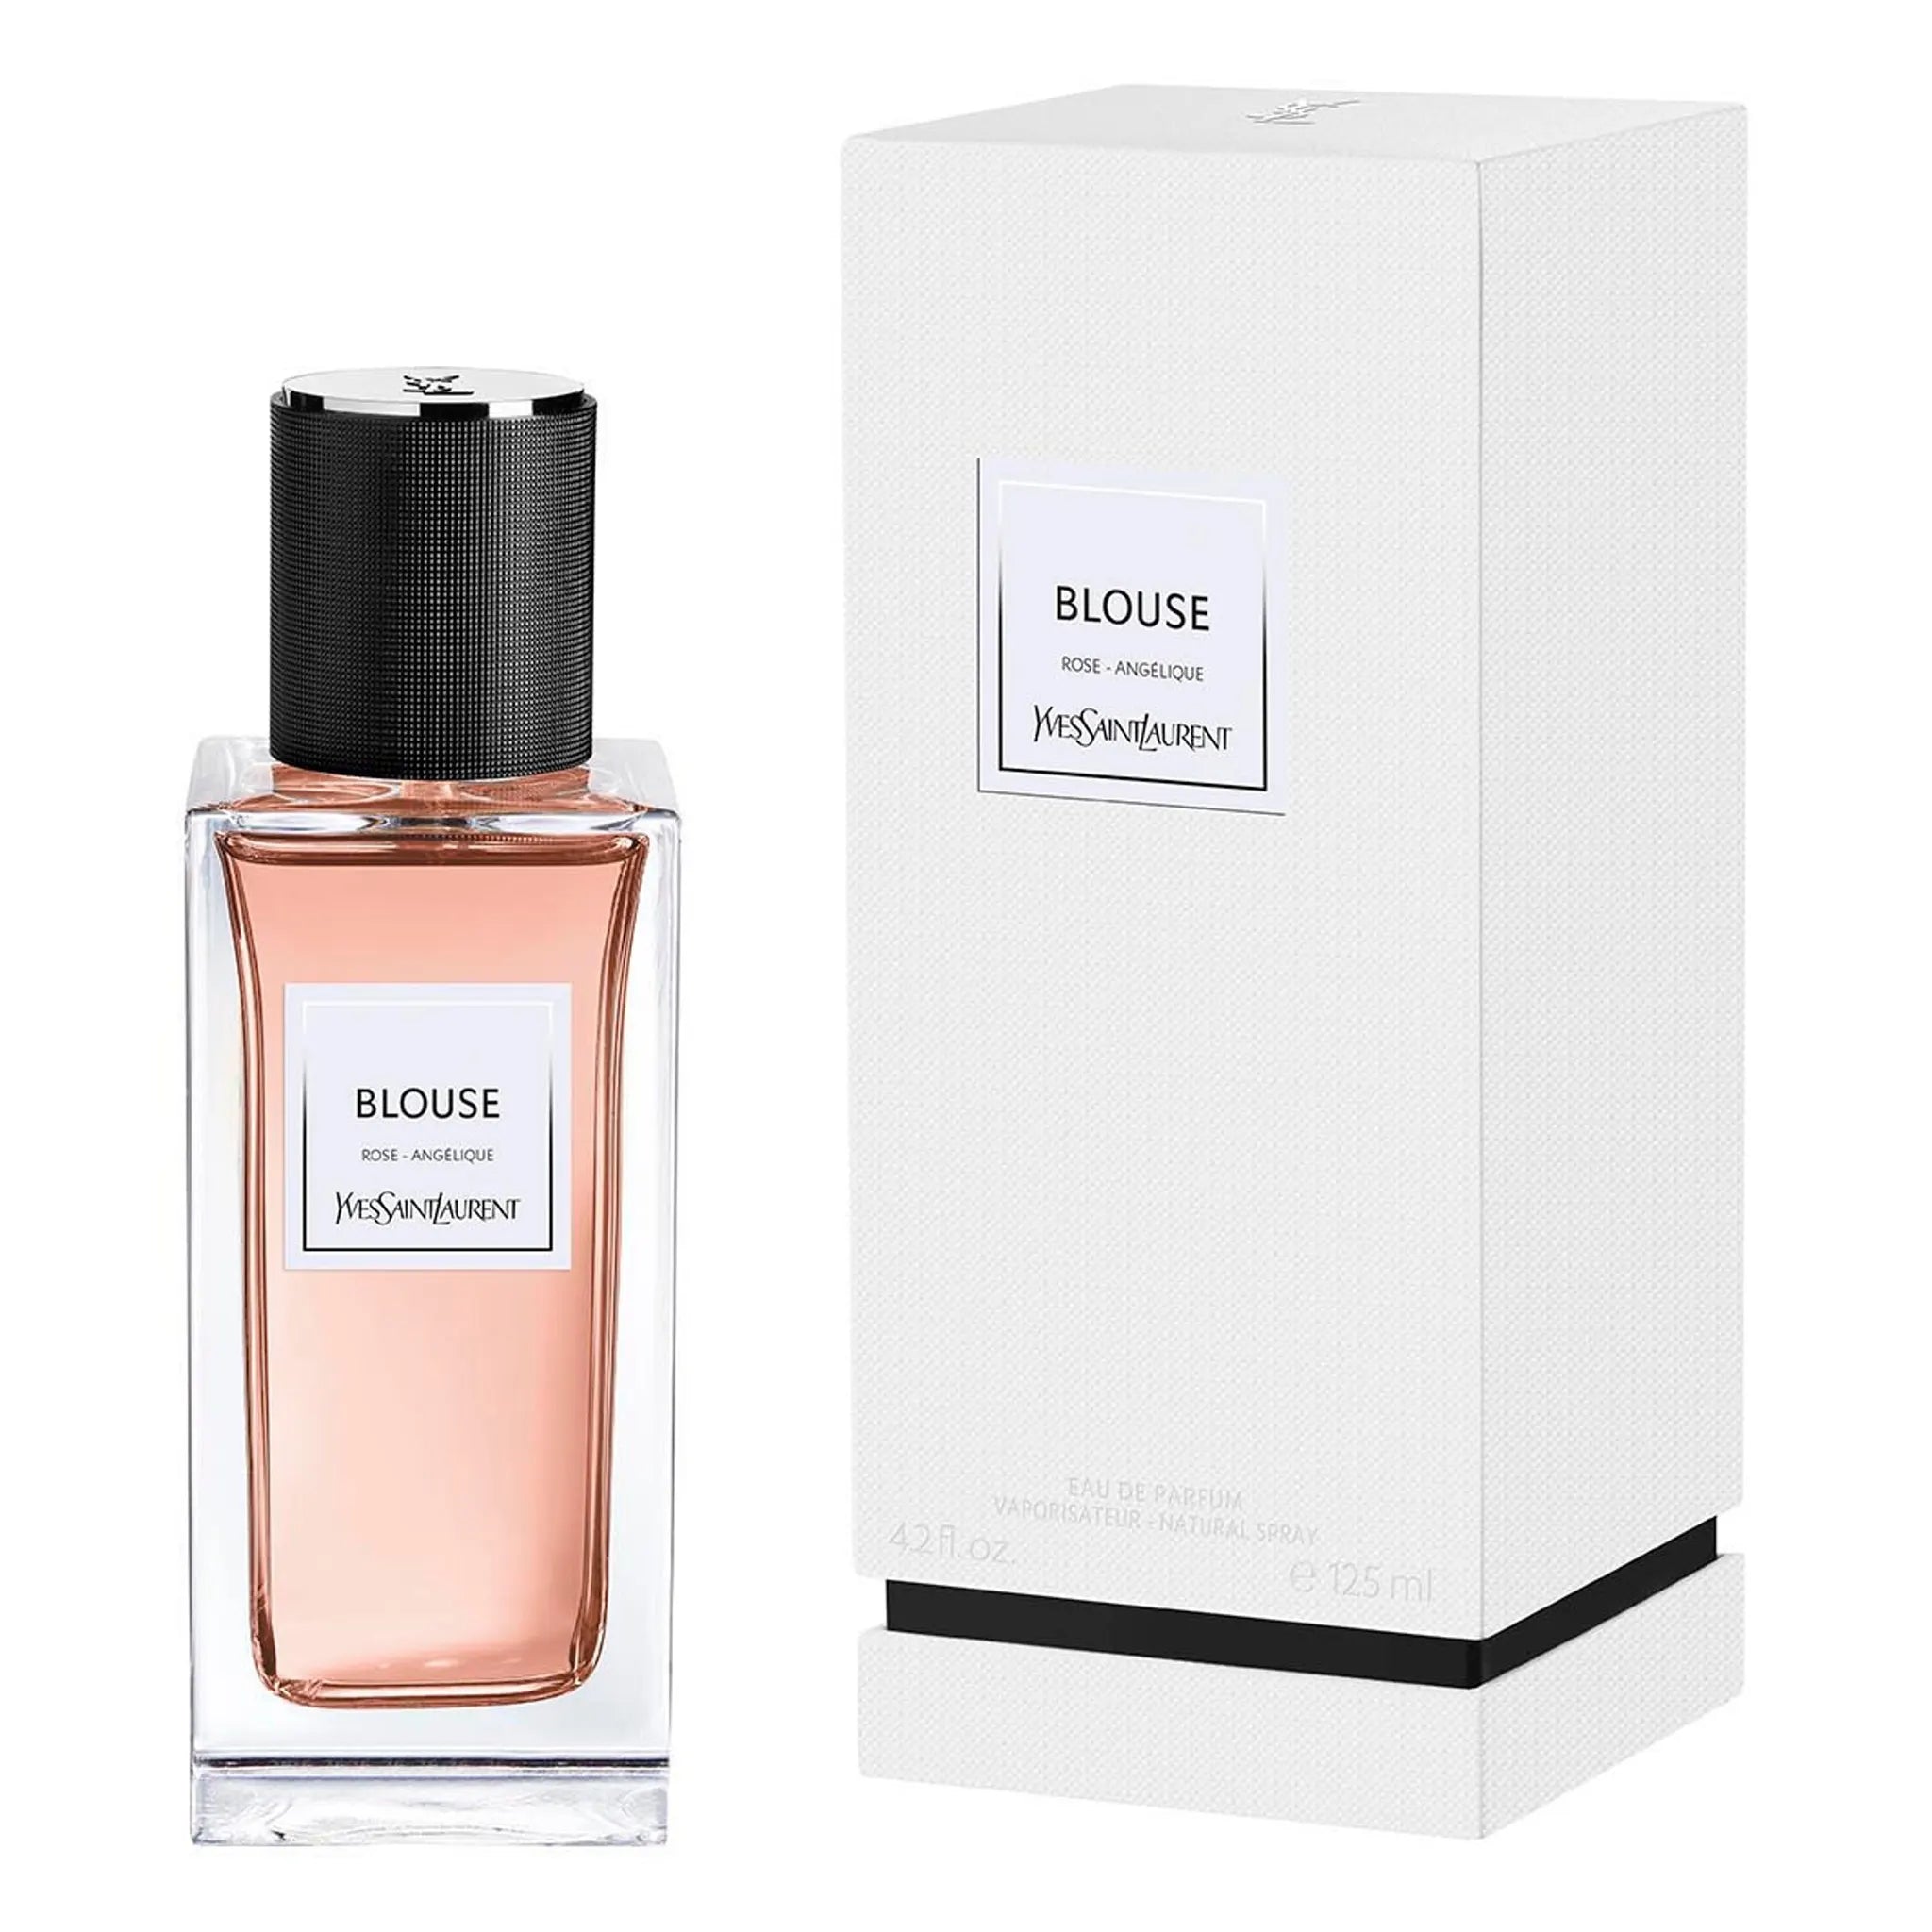 Packaging view of Yves Saint Laurent LVDP Blouse Eau De Parfum 125ml